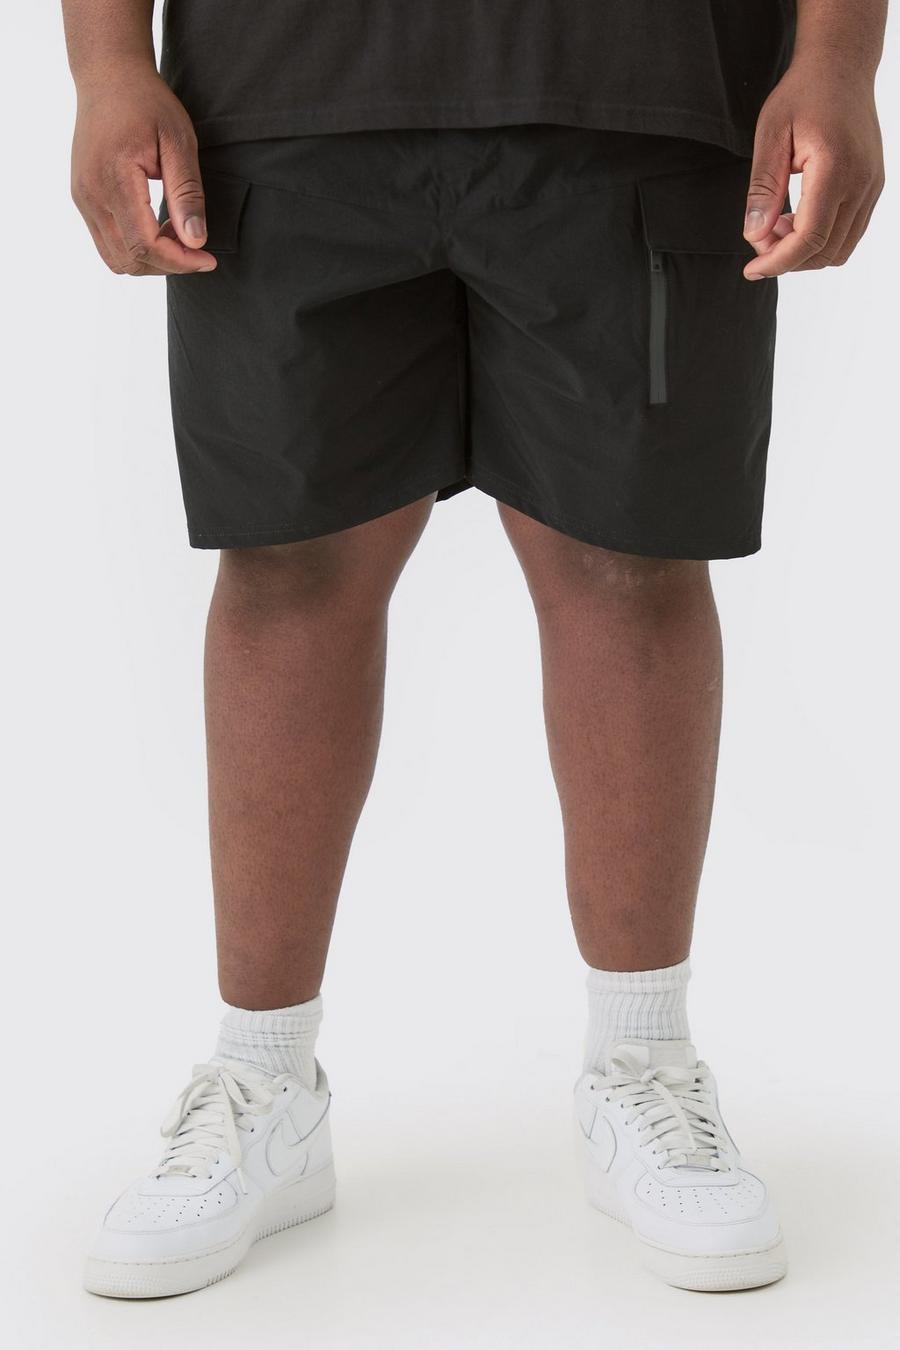 Pantaloncini Cargo Plus Size leggeri in Stretch elasticizzati con zip, Black